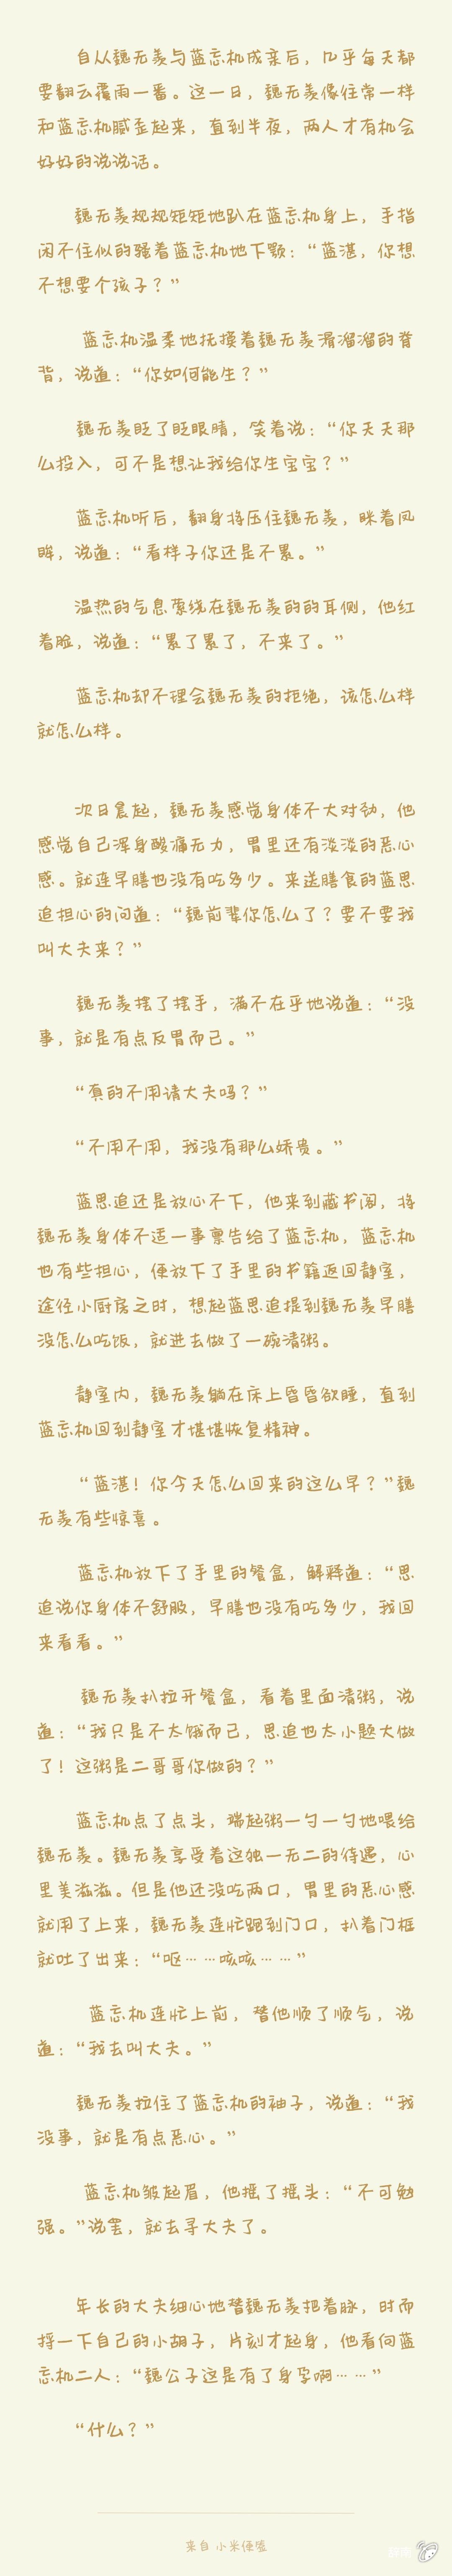 2019-10-04 4397 阅读 16 评论 衍生小说 忘羡 魔道 曦澄 魔道祖师